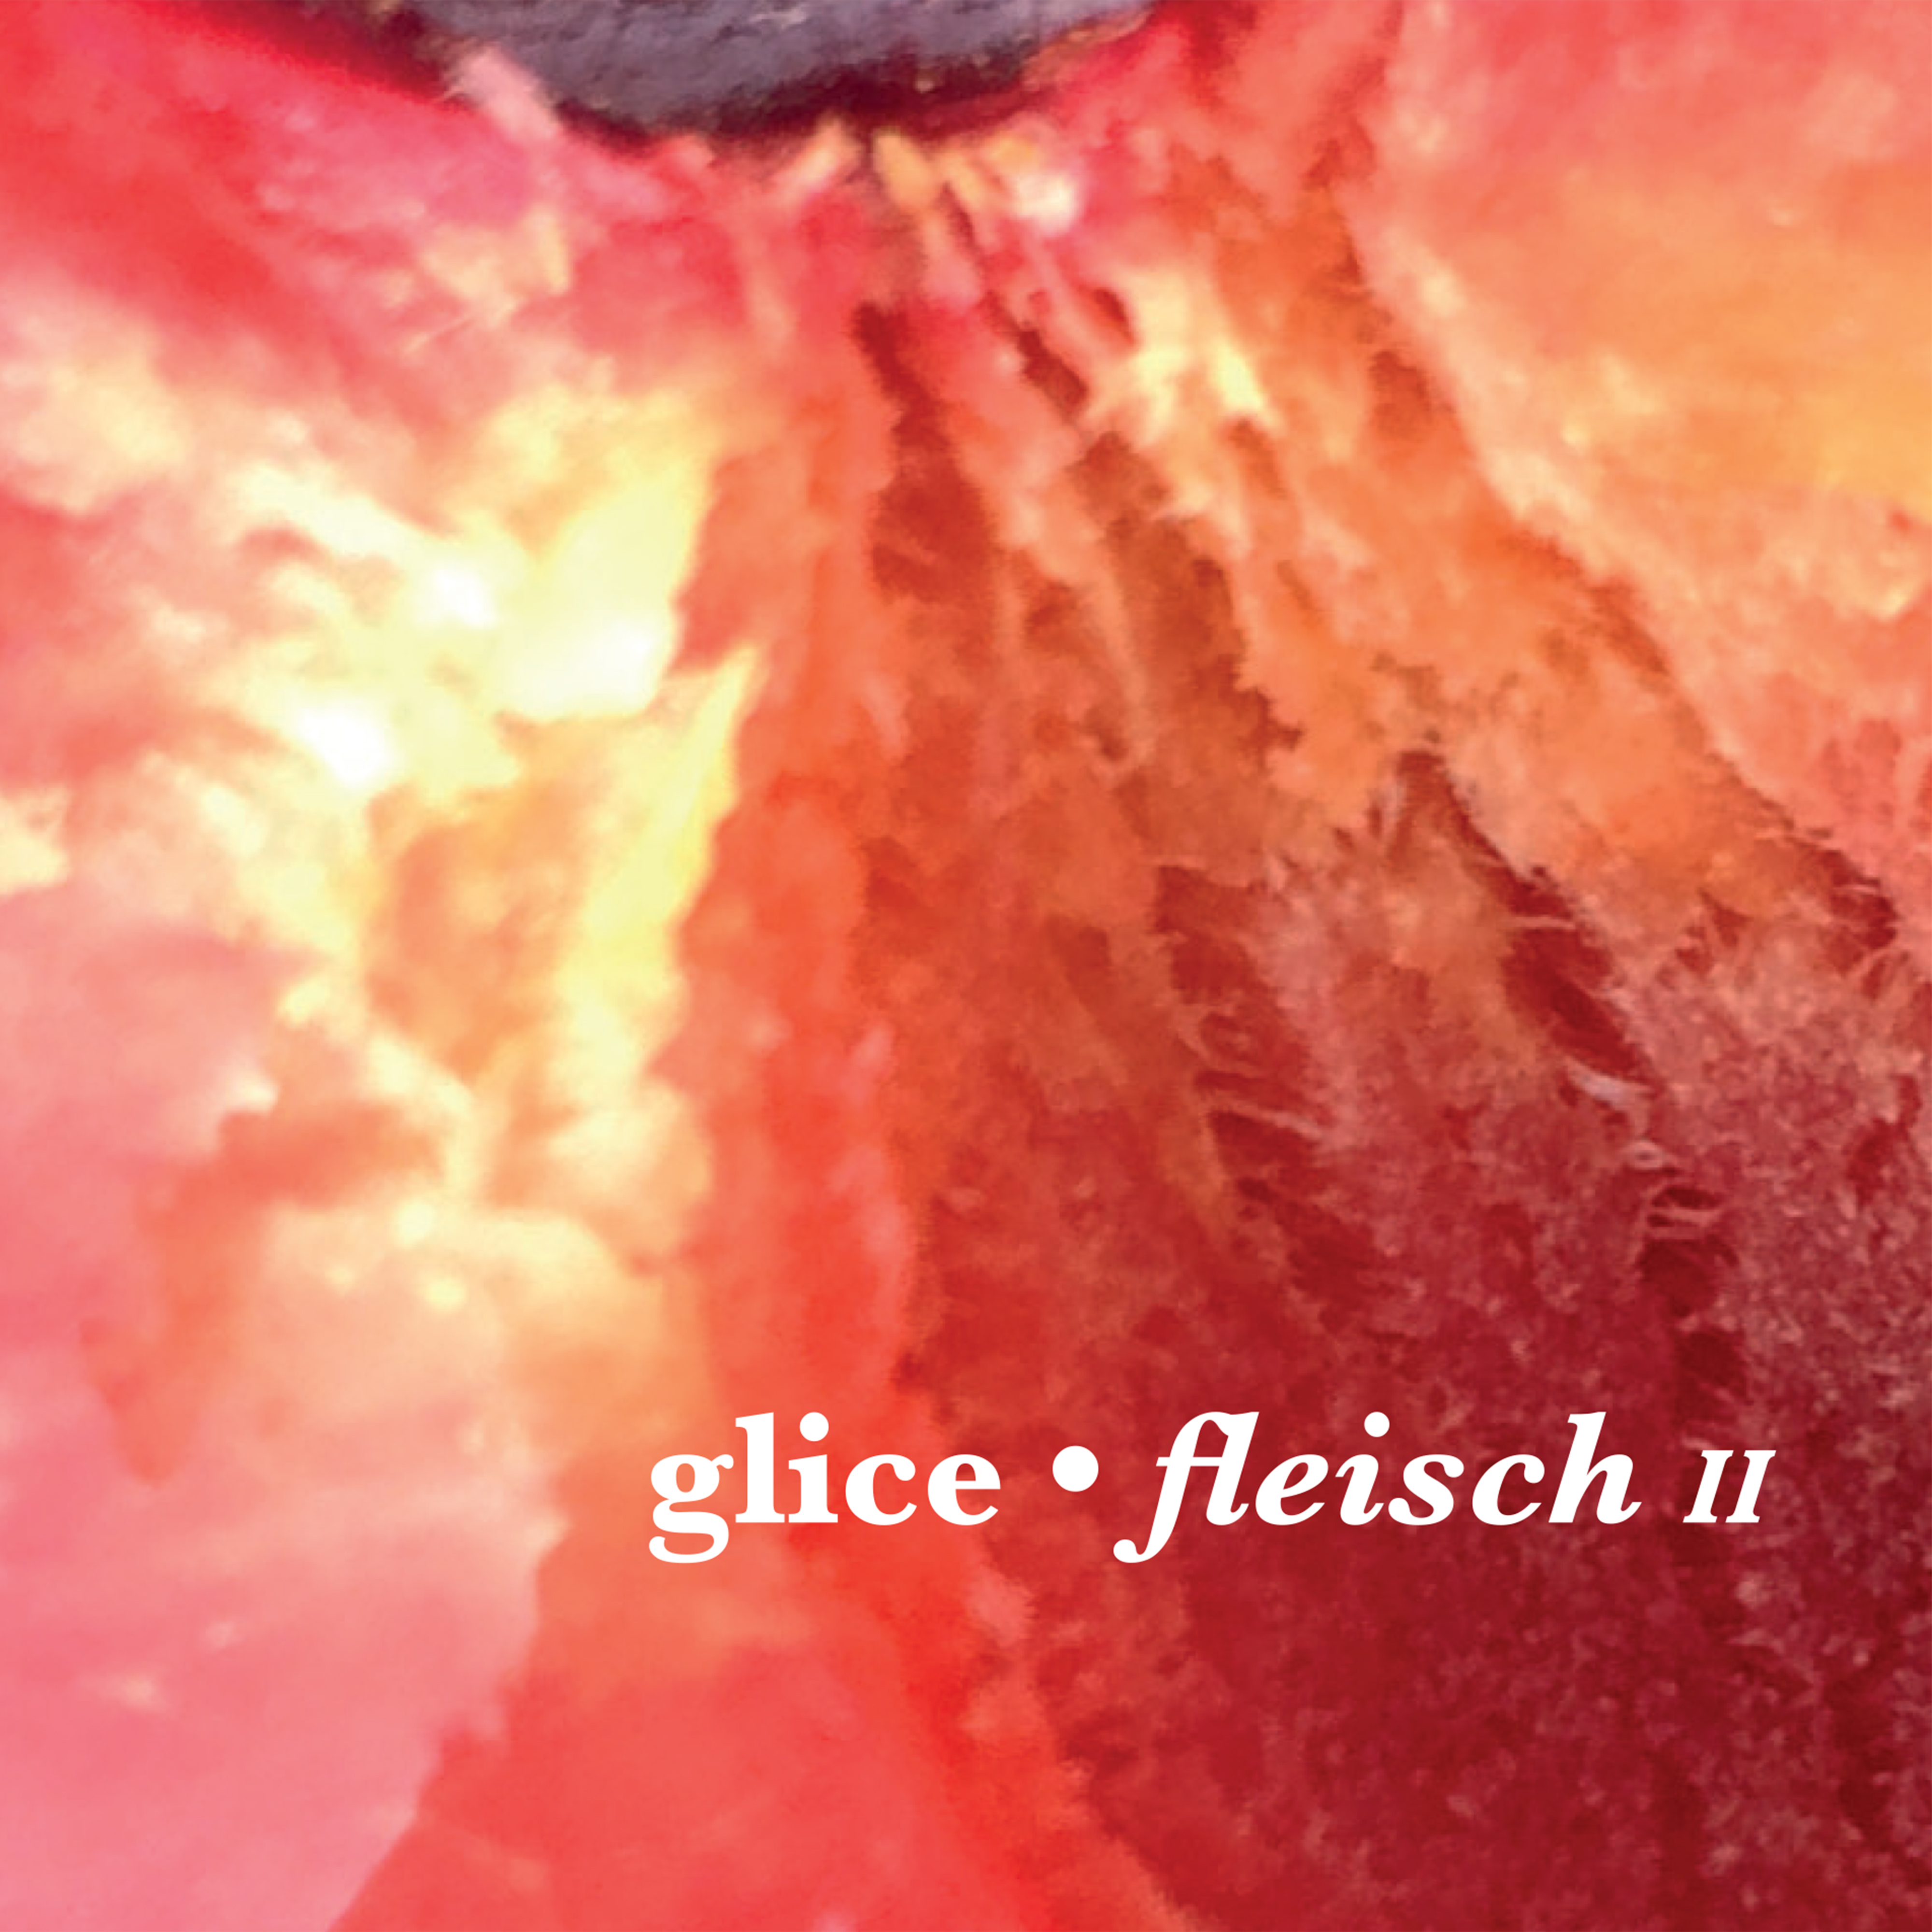 nm074-glice-fleisch-ii